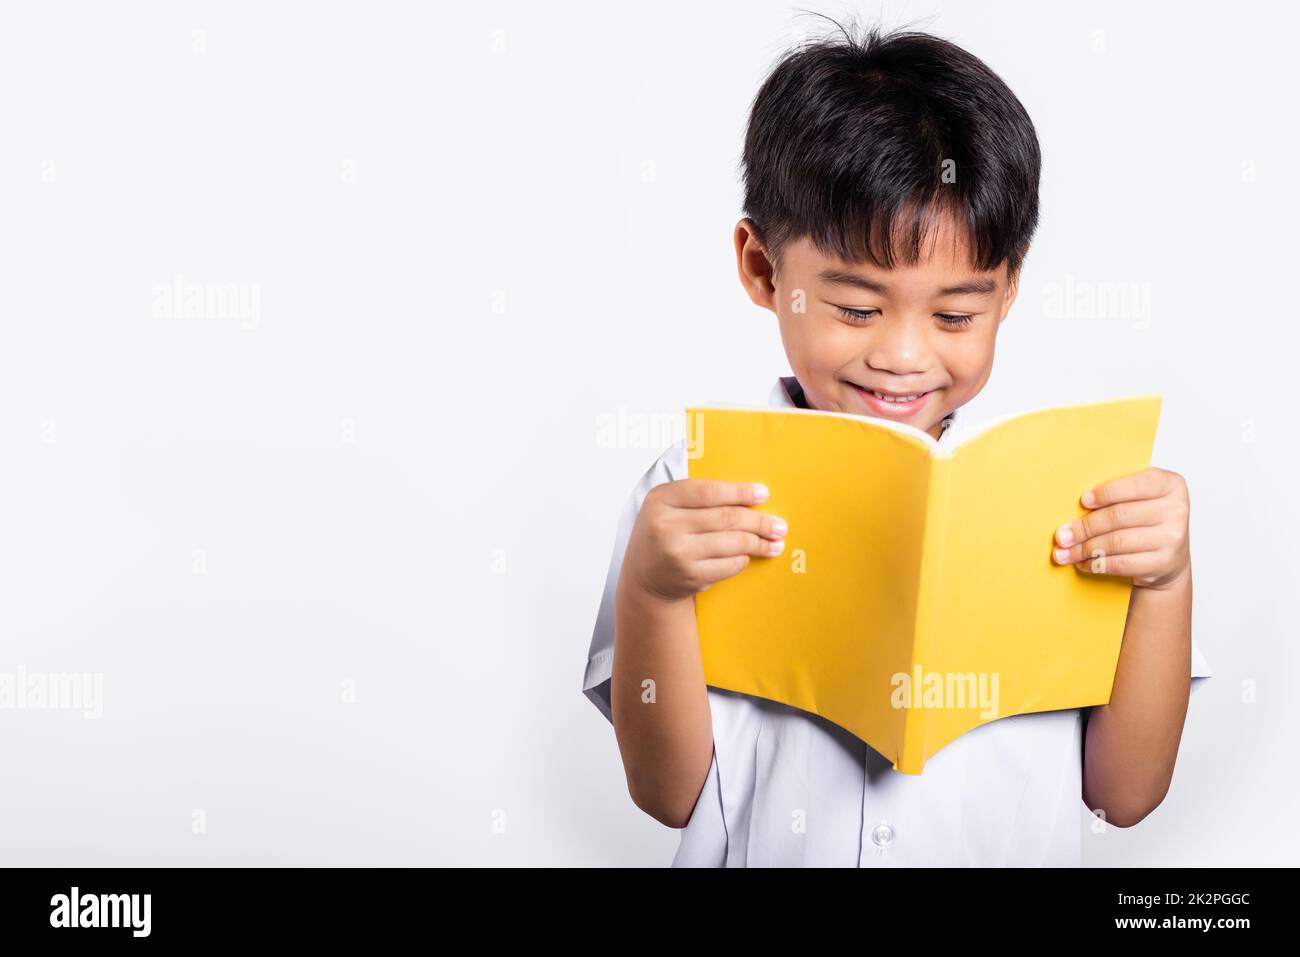 Un tout-petit asiatique se sourit heureux de porter un étudiant thaïlandais uniforme pantalon rouge debout tenant et lisant un livre Banque D'Images